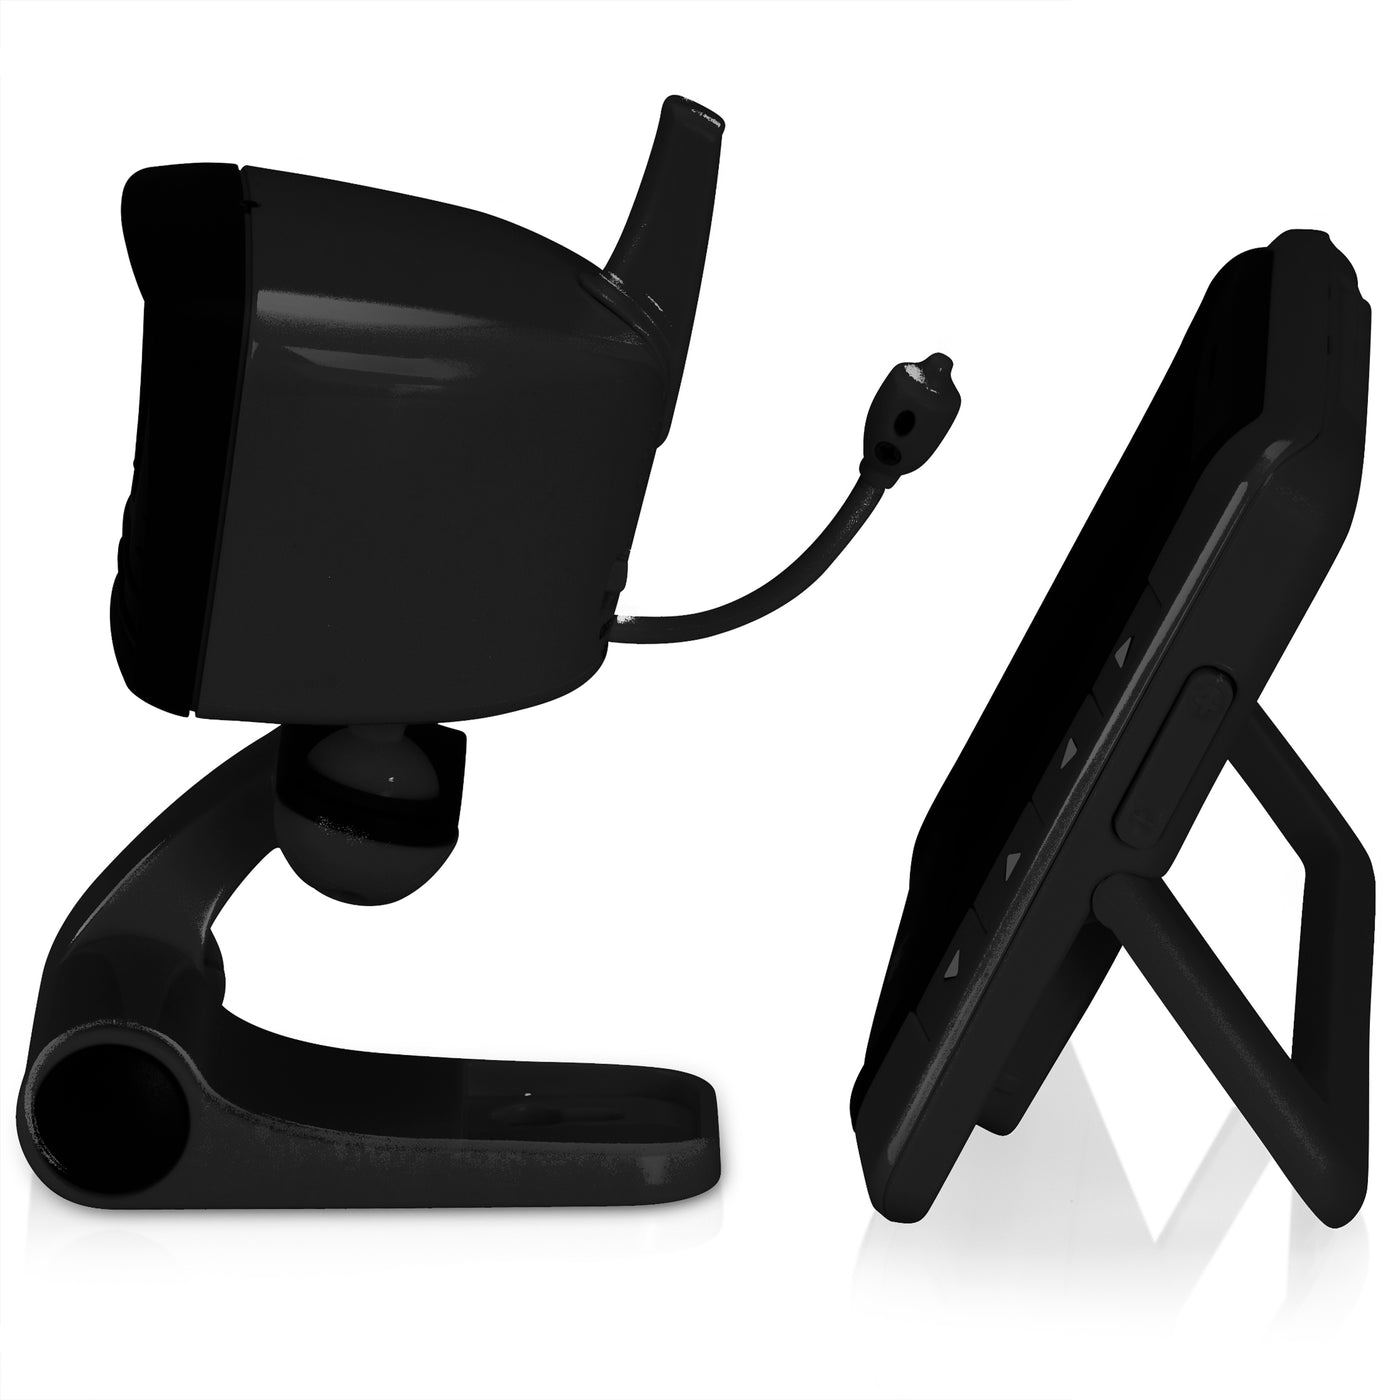 Alecto DVM-250ZT - Babyphone avec caméra et écran couleur 5", noir